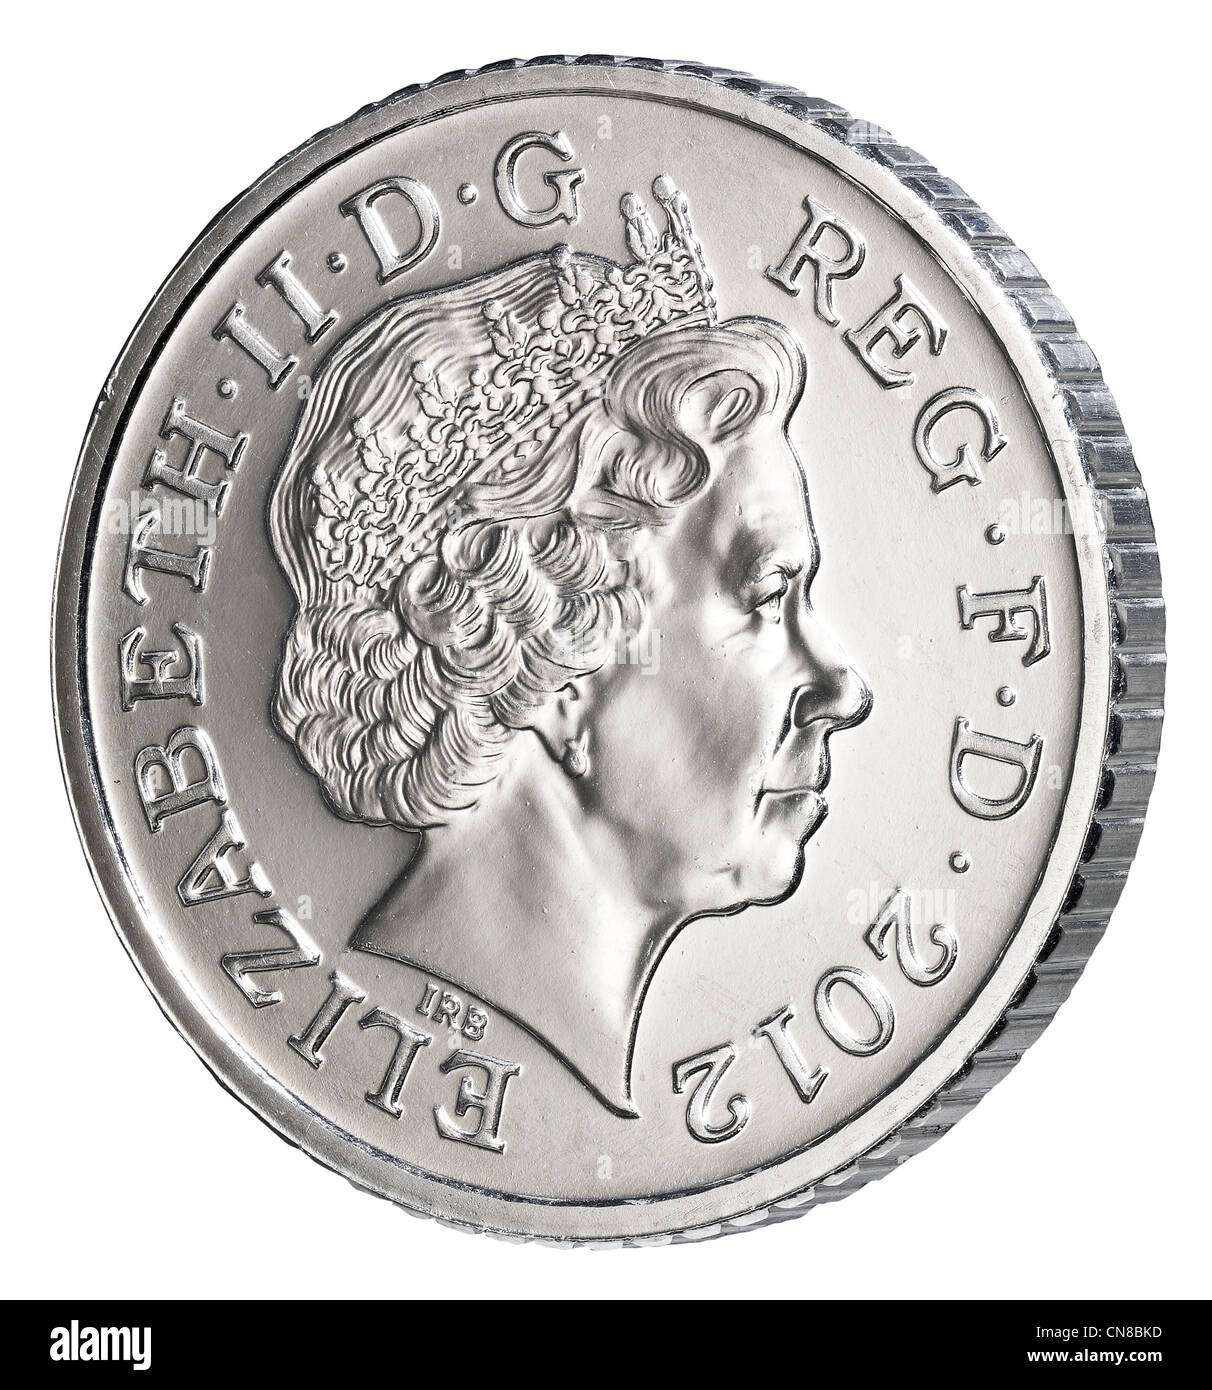 5P fünf Pence Münze Seite auf Vorderseite Kopf 2012 Stockfoto